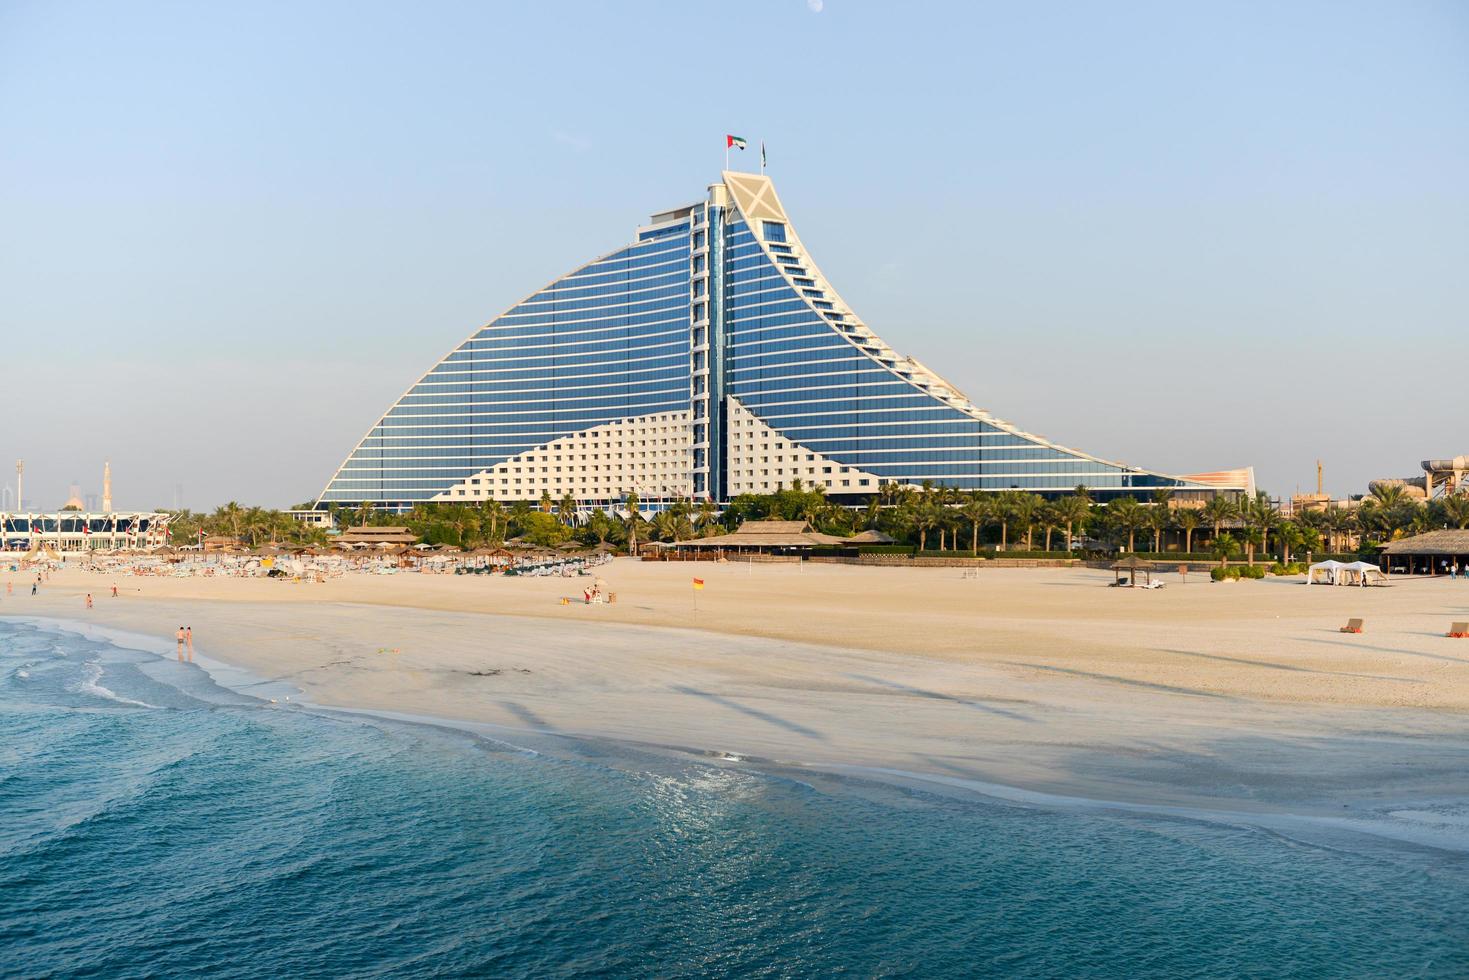 Dubai, UAE - November 25, 2012 -  Jumeirah Beach Hotel in Dubai. This wave-shaped hotel complements the sail-shaped Burj Al Arab, which is adjacent to the Jumeirah Beach Hotel. photo